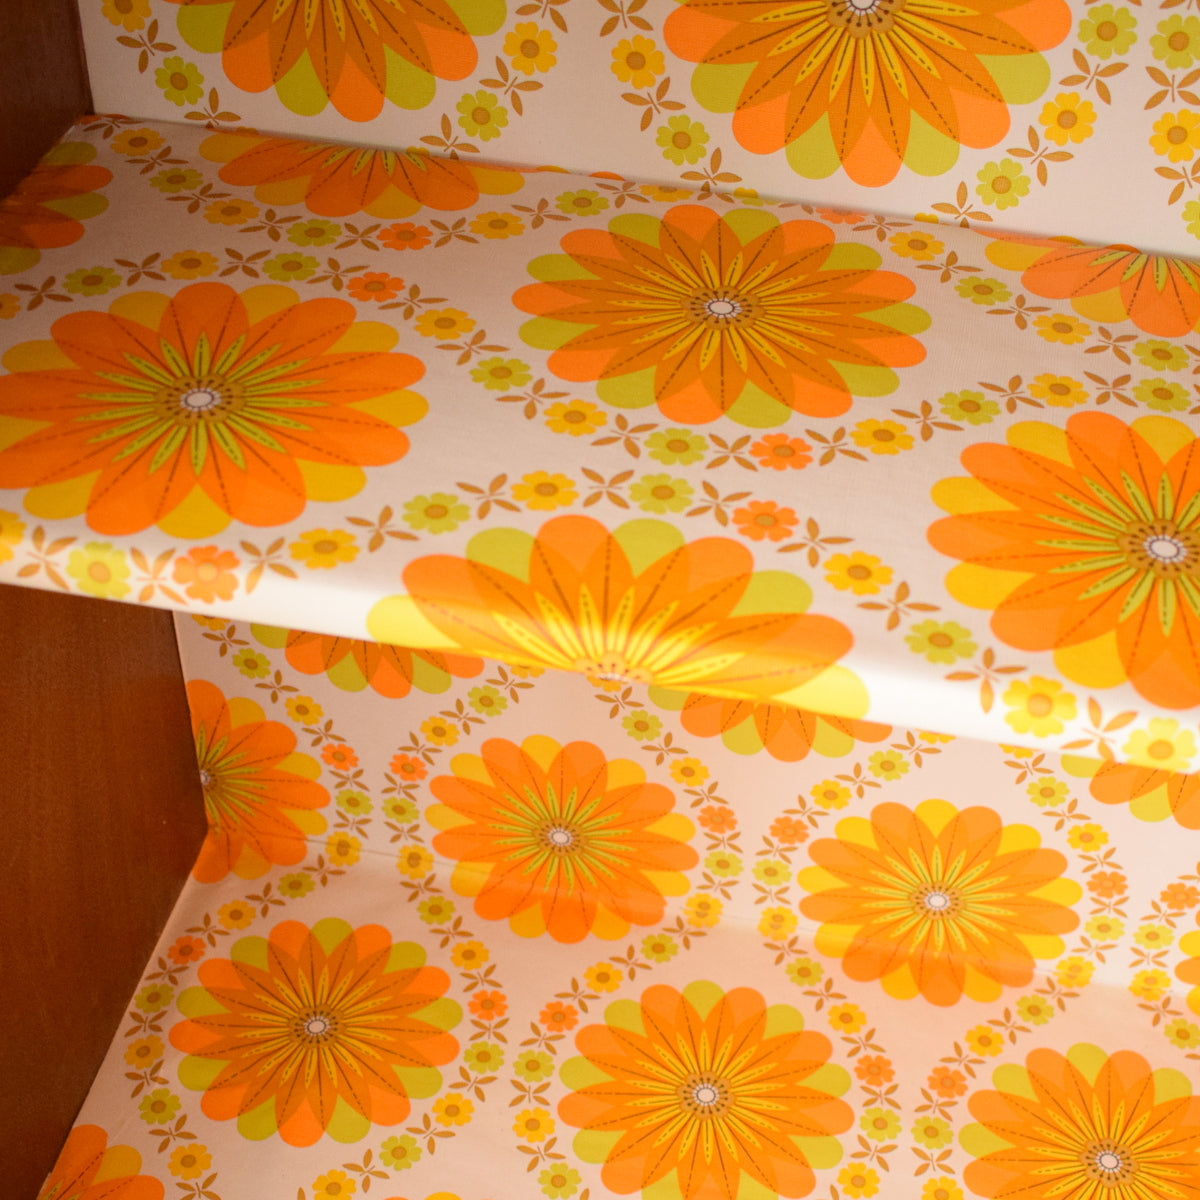 Vintage 1960s Teak Cabinet - Orange Legs & Wallpaper Backing - Orange & Yellow